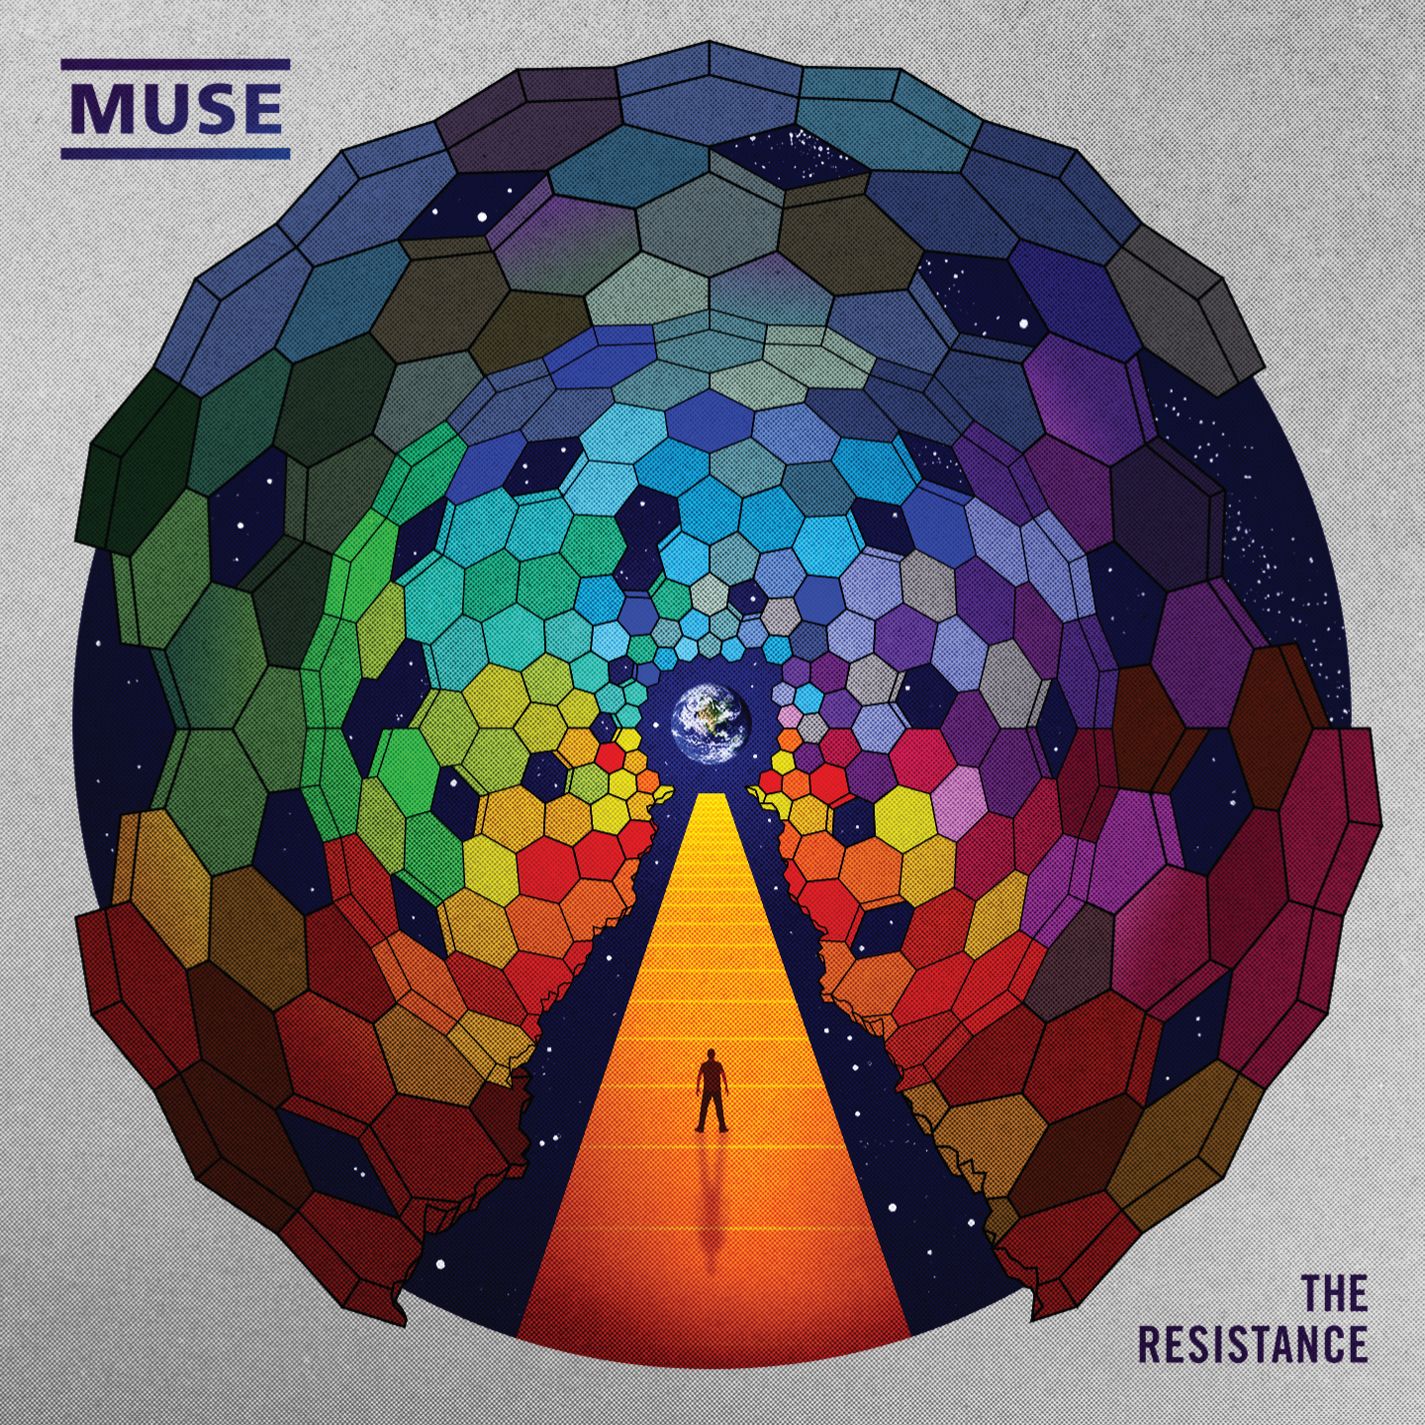 Muse - The Resistance (2009/2015) [Qobuz FLAC 24bit/96kHz]